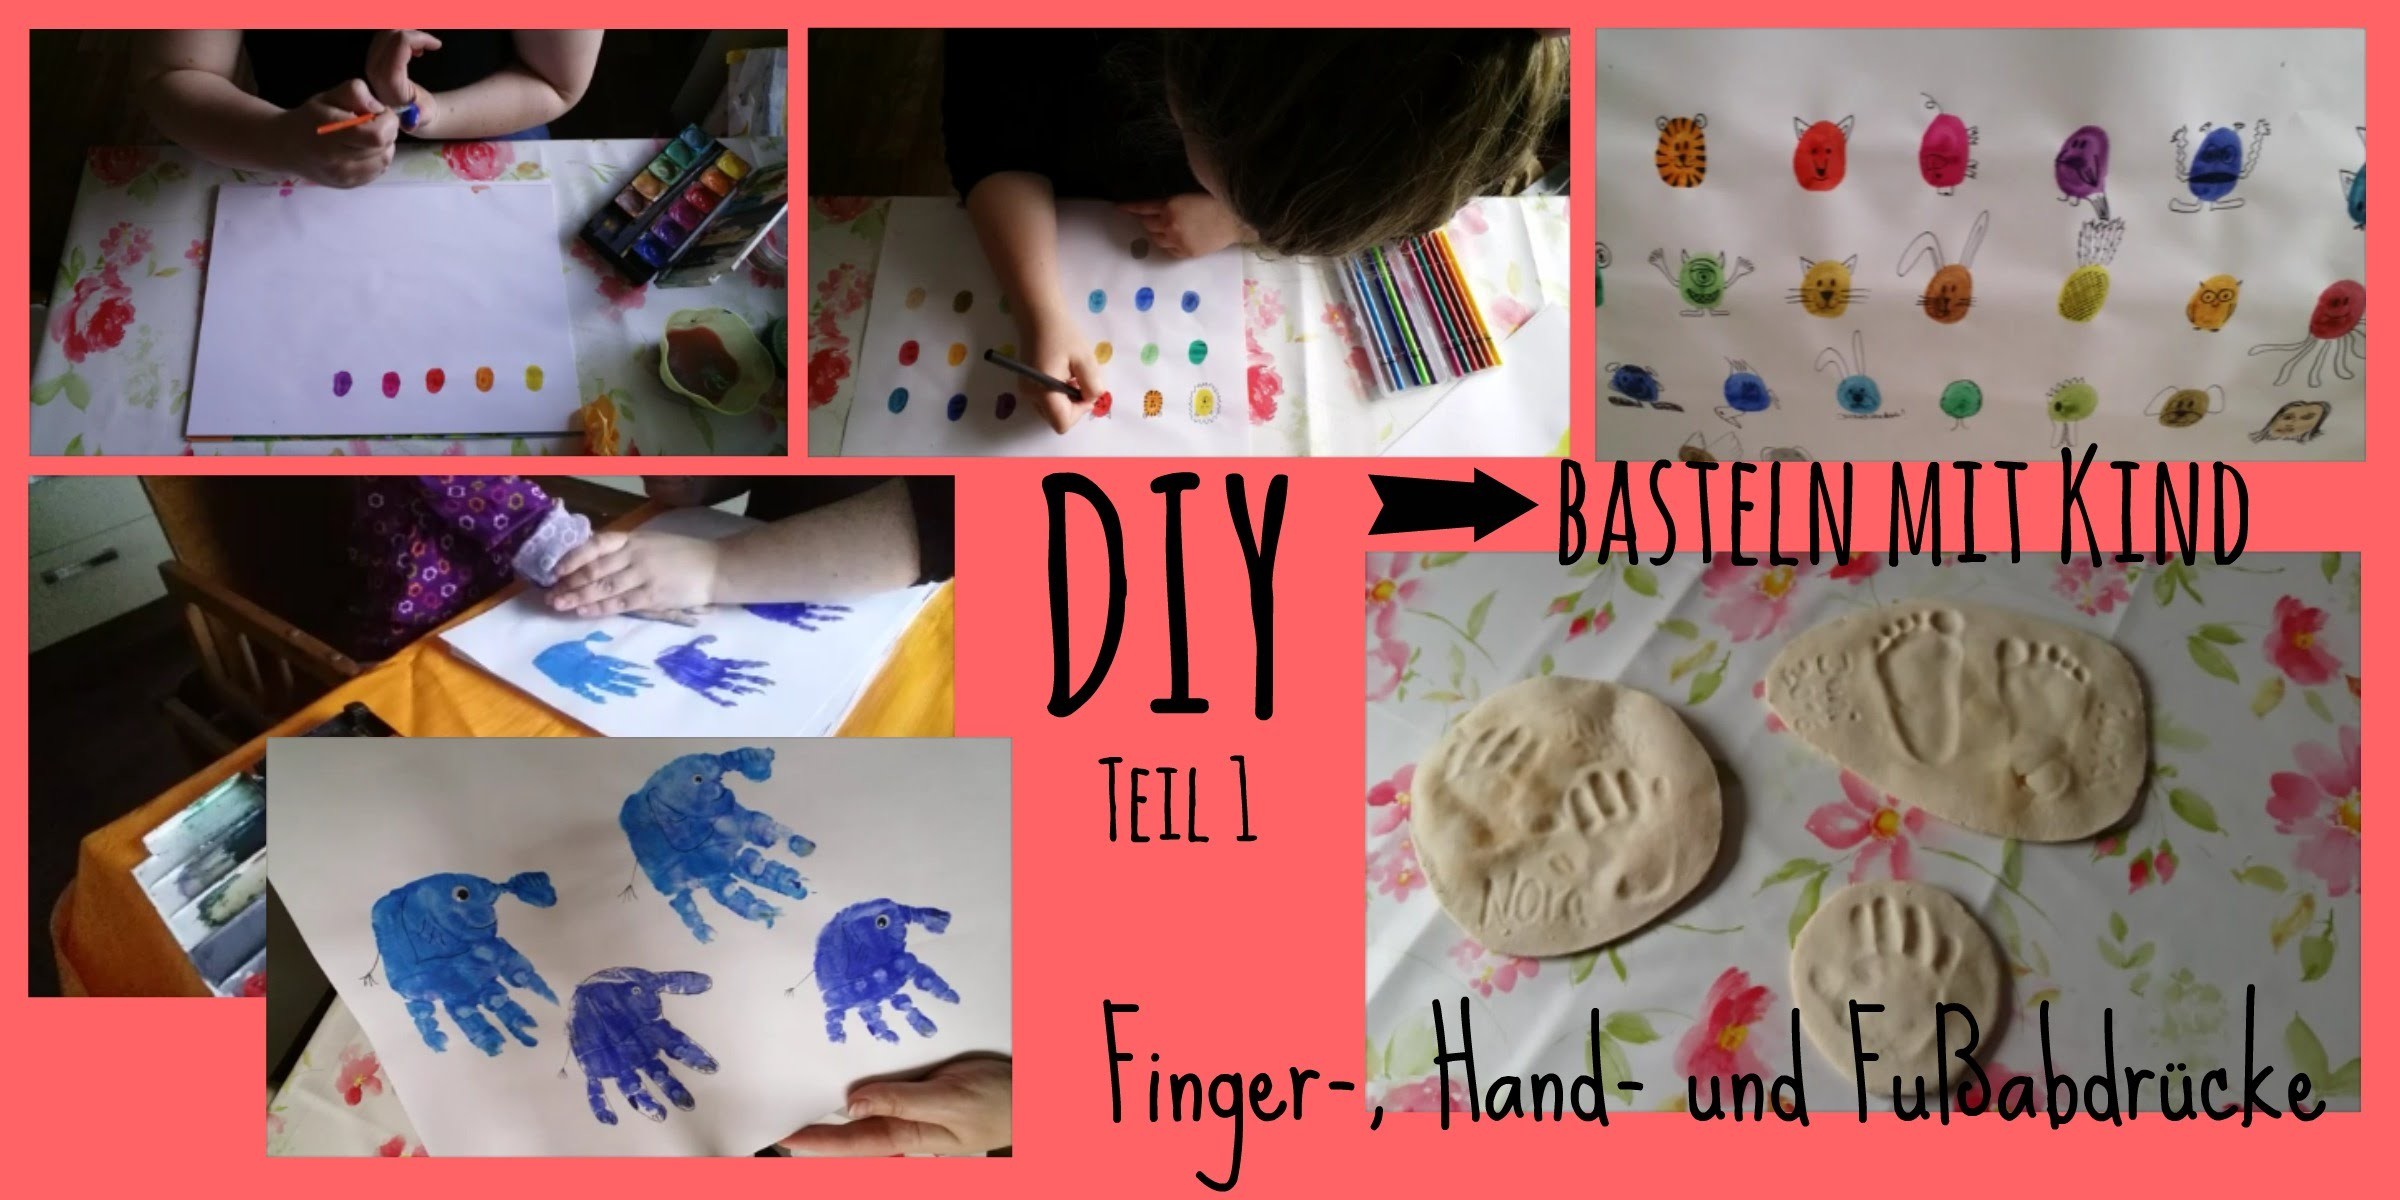 DIY - basteln mit Kind Teil 1 | Finger-, Hand- und Fußabdrücke | Salzteig Rezept